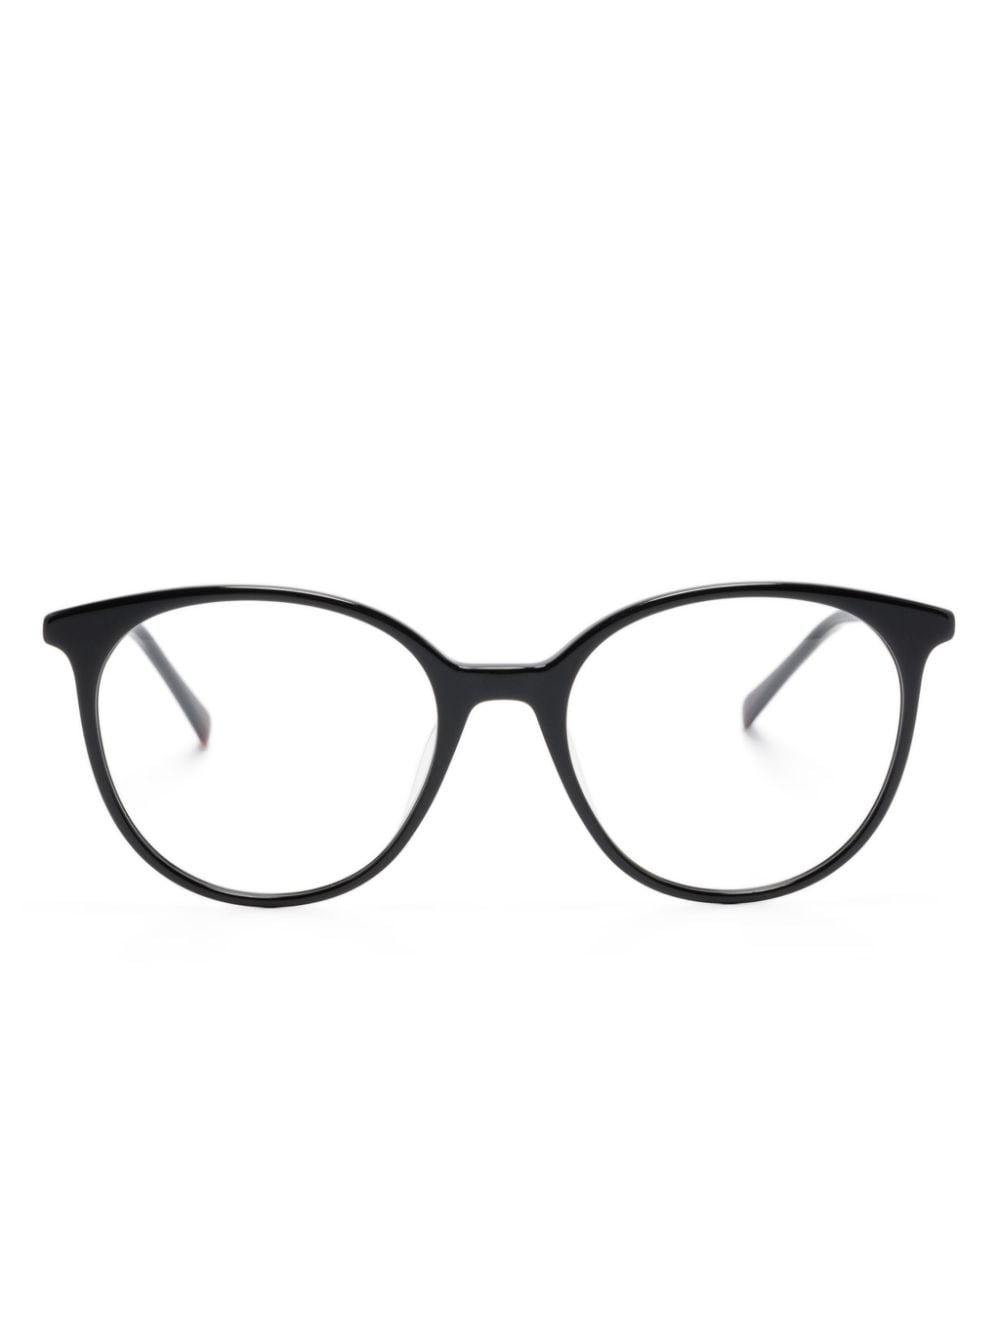 GIGI STUDIOS Flavia pantos-frame glasses - Black von GIGI STUDIOS